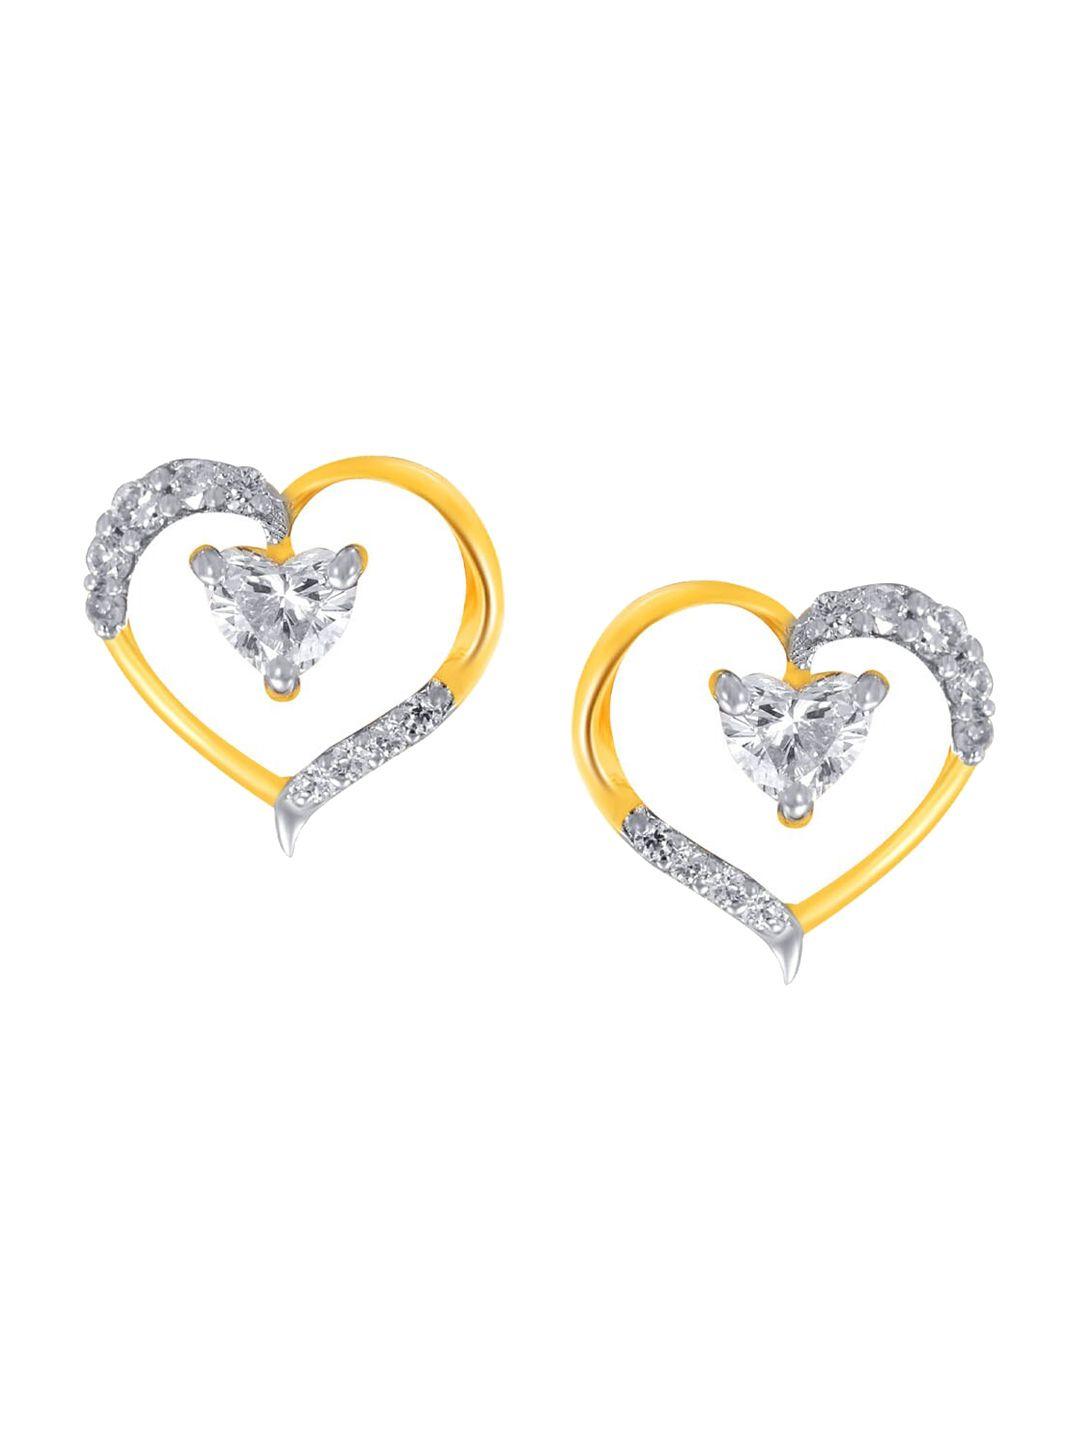 senco-heart-affection-14kt-gold-diamond-studded-stud-earrings-1.2gm